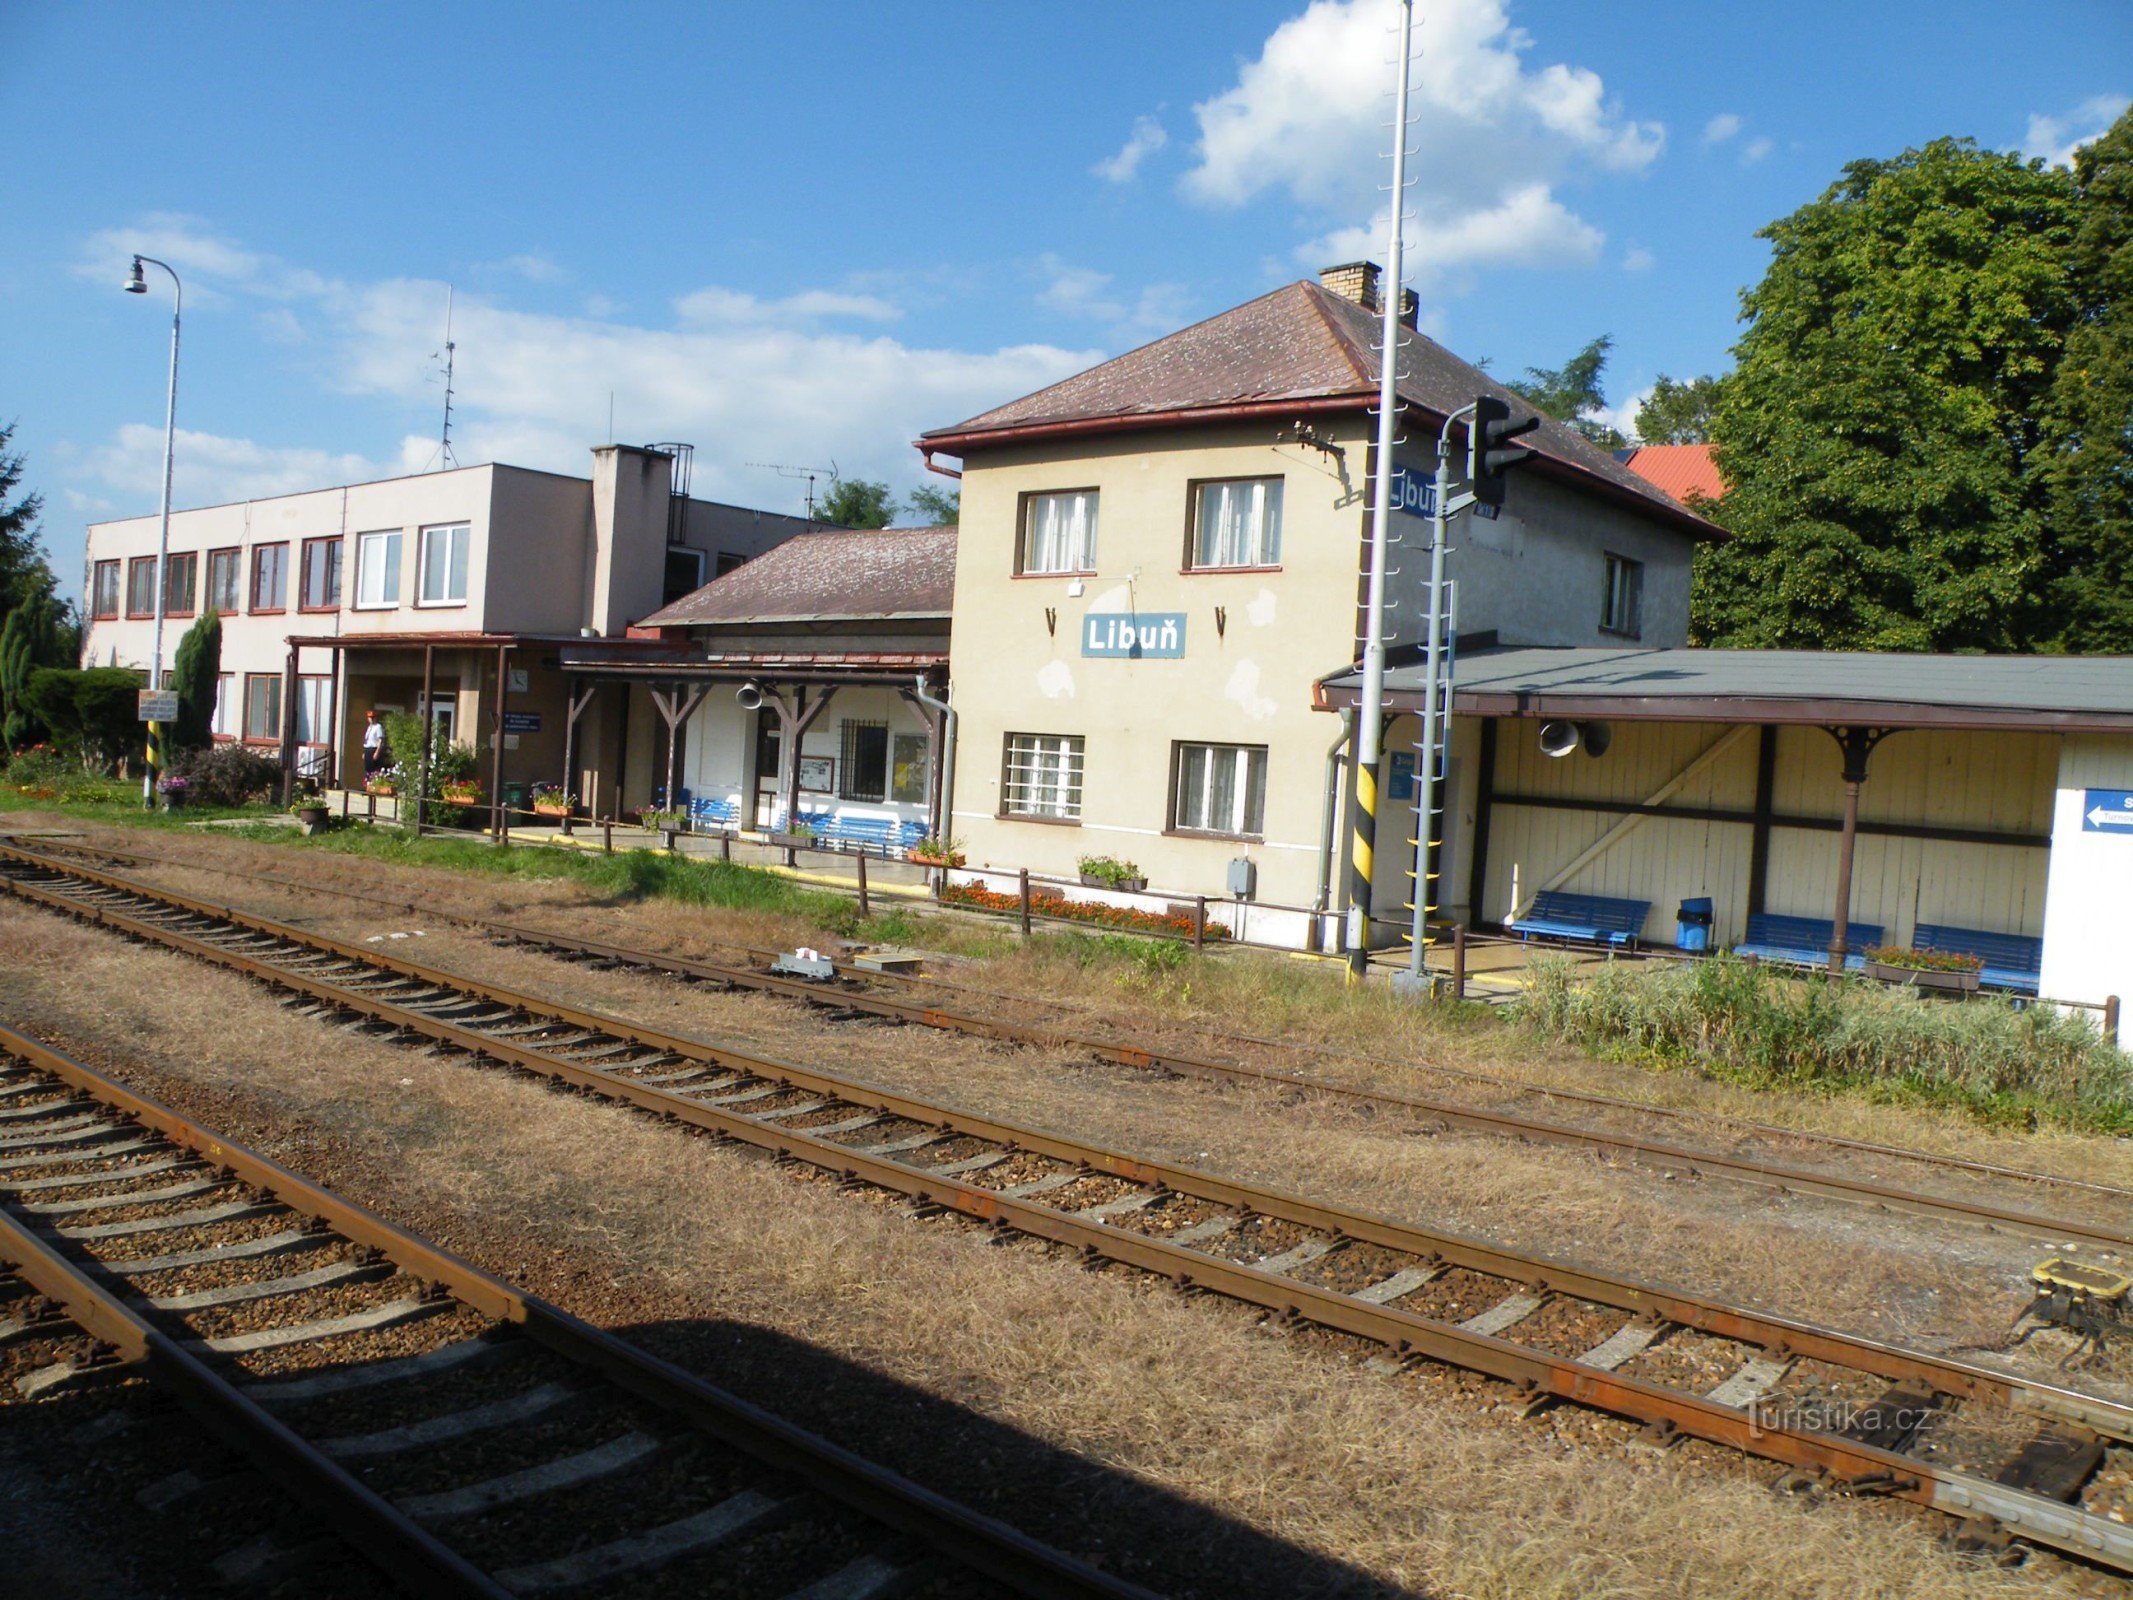 Libuň - stacja kolejowa